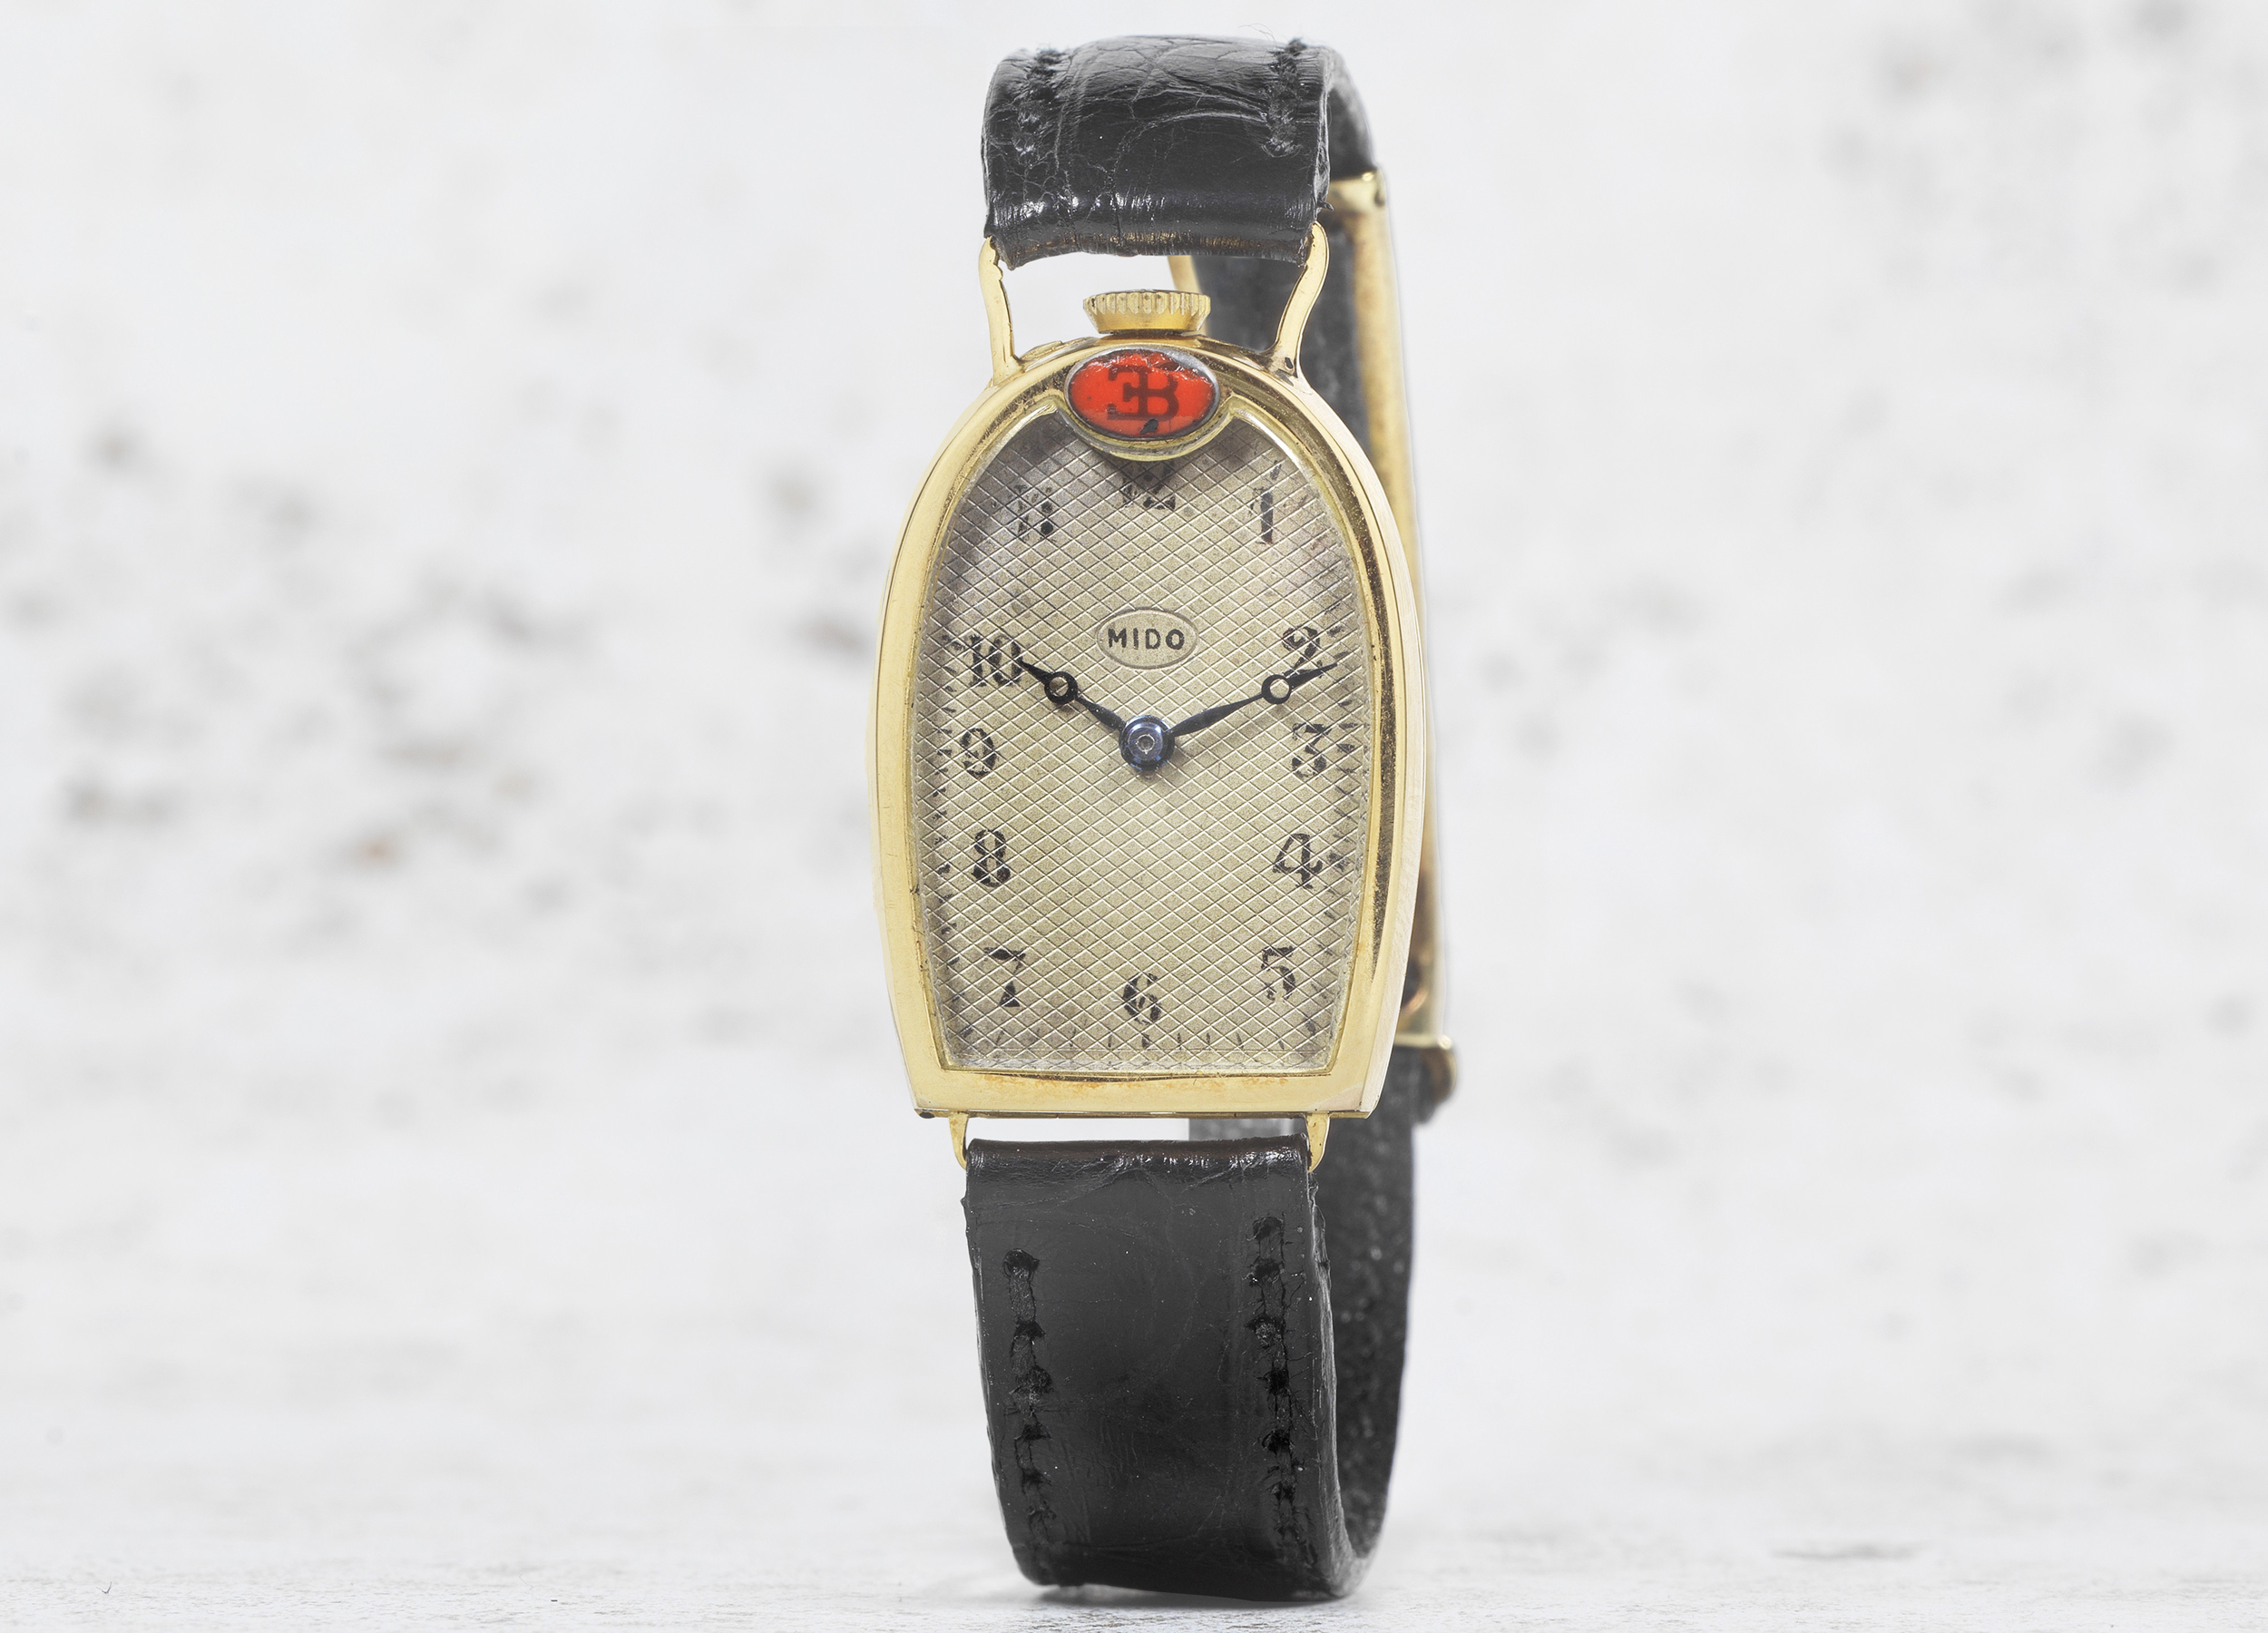 18k gold mido for bugatti wristwatch circa 1925 estimate 50000 80000